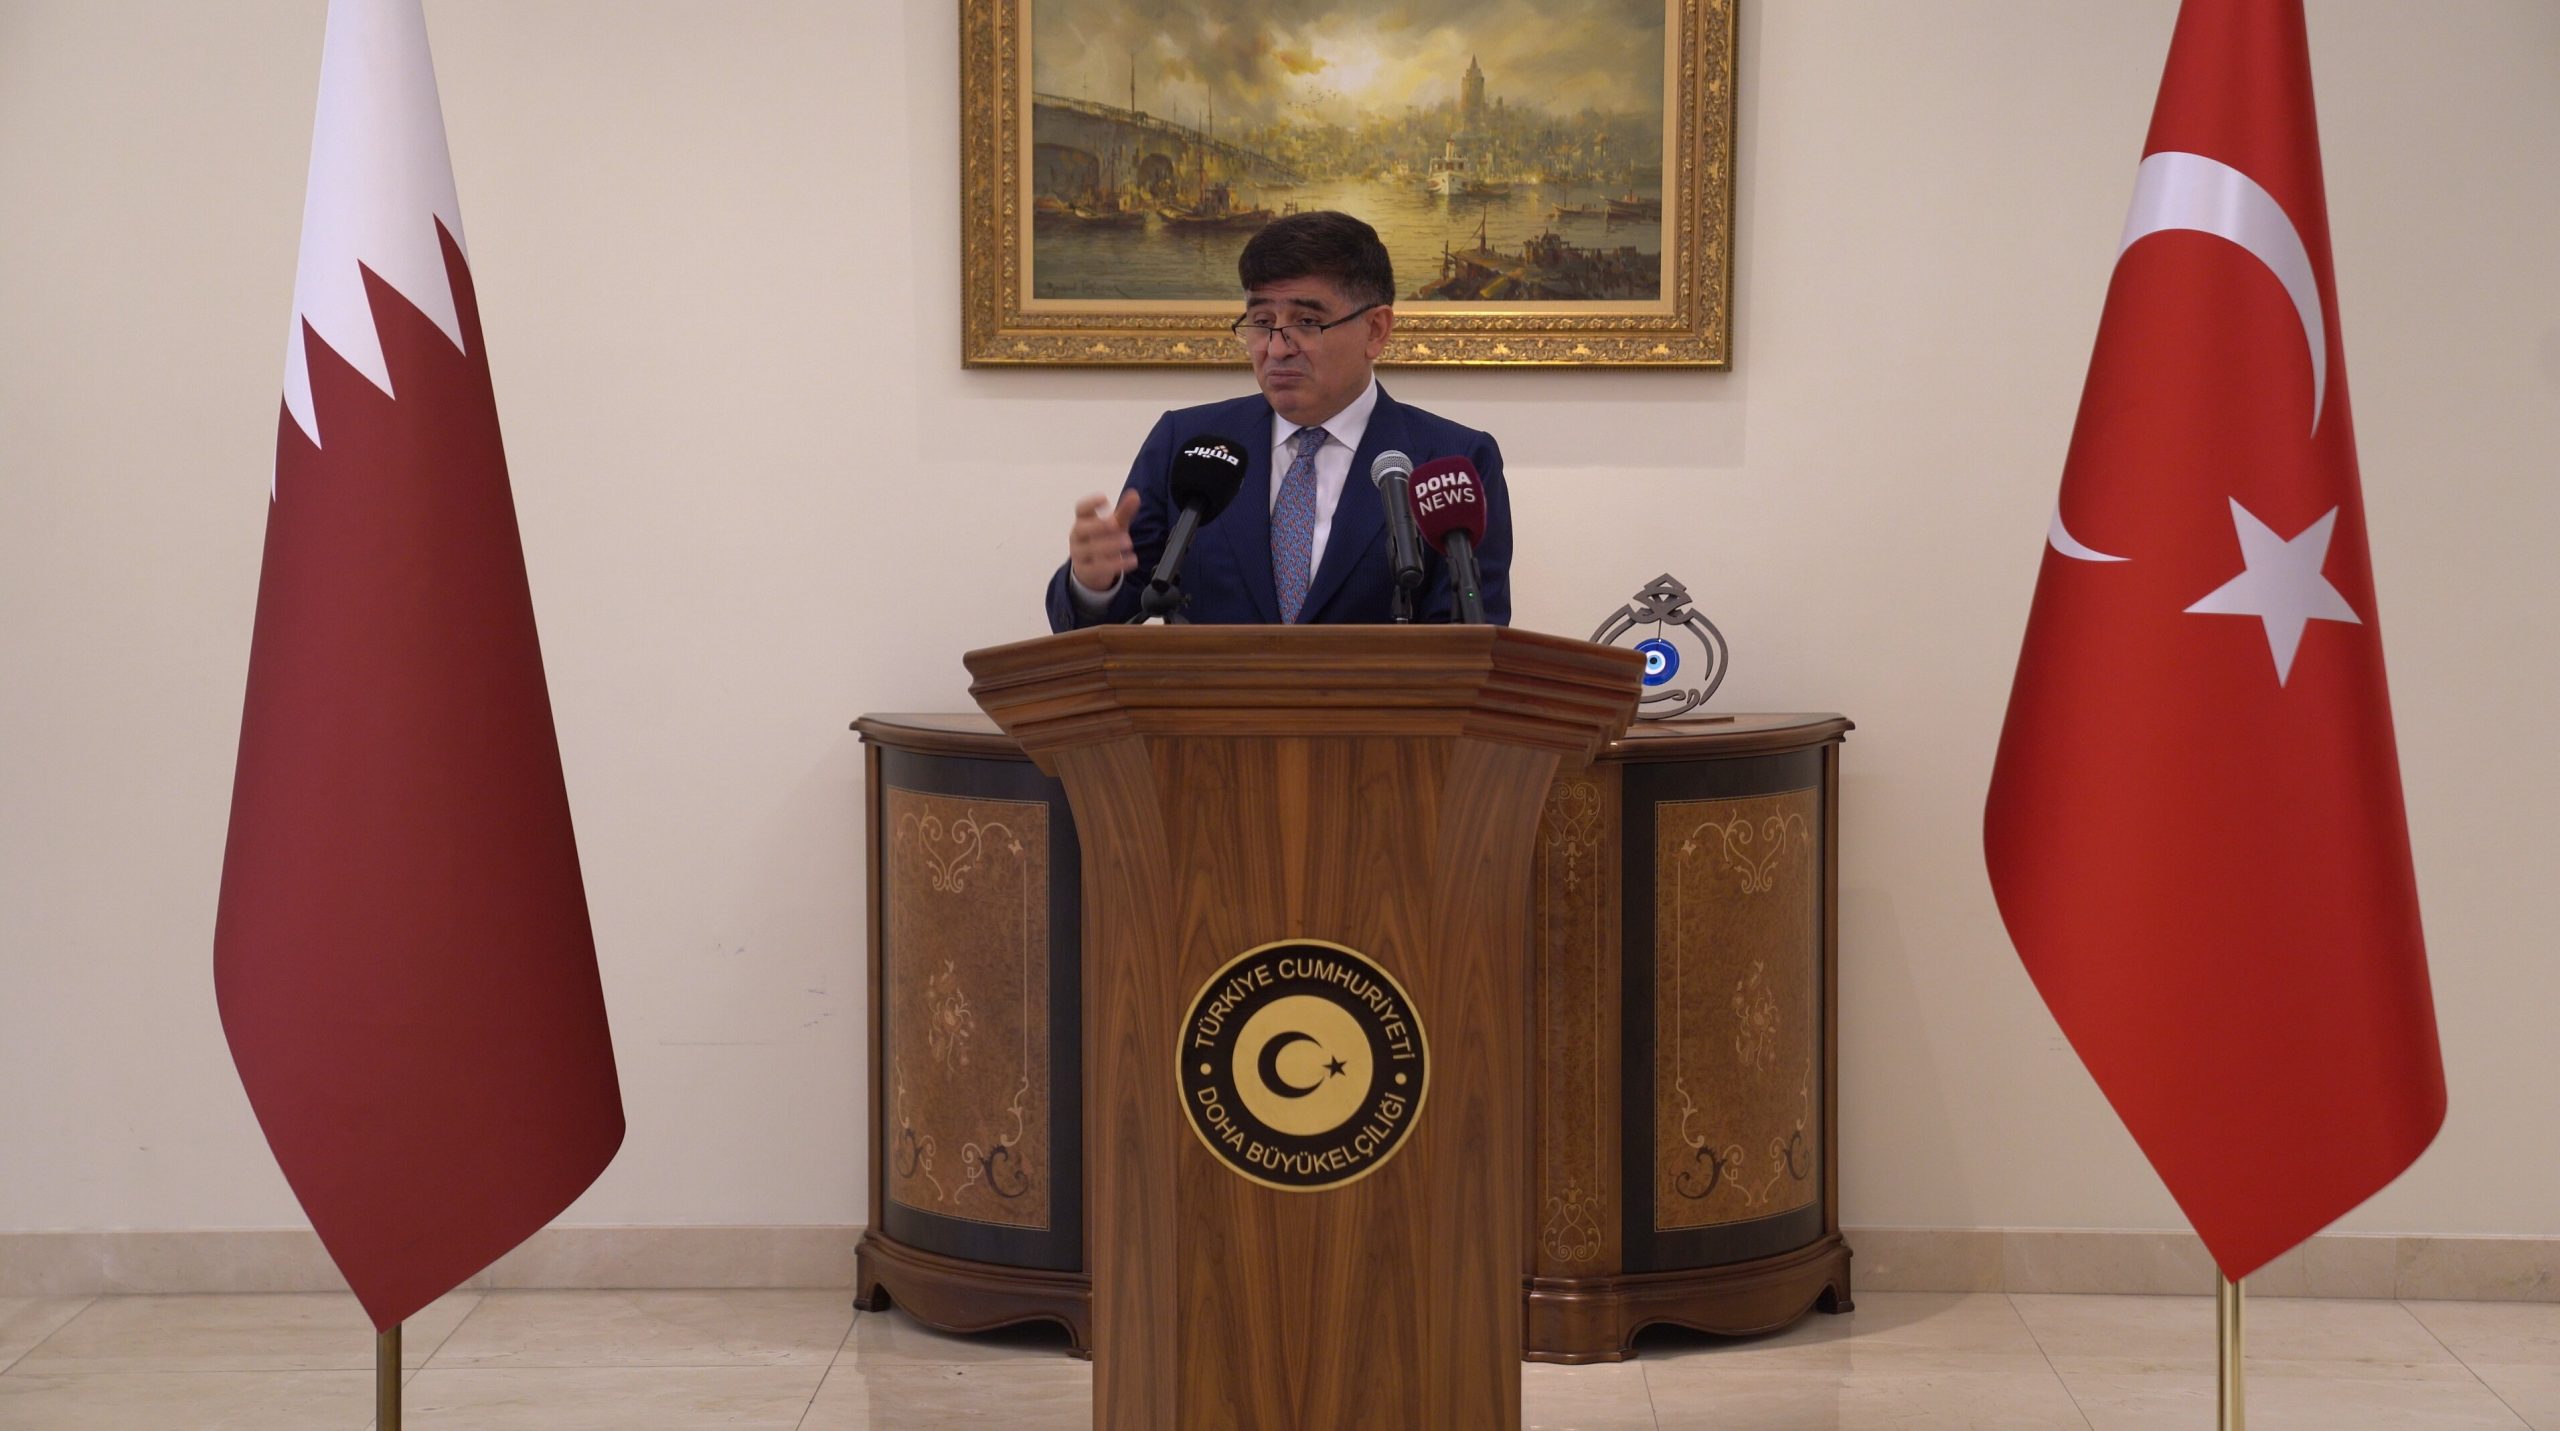 Turkish ambassador in Doha praises Qatar Amir on eight-year mark of failed coup attempt in Turkiye